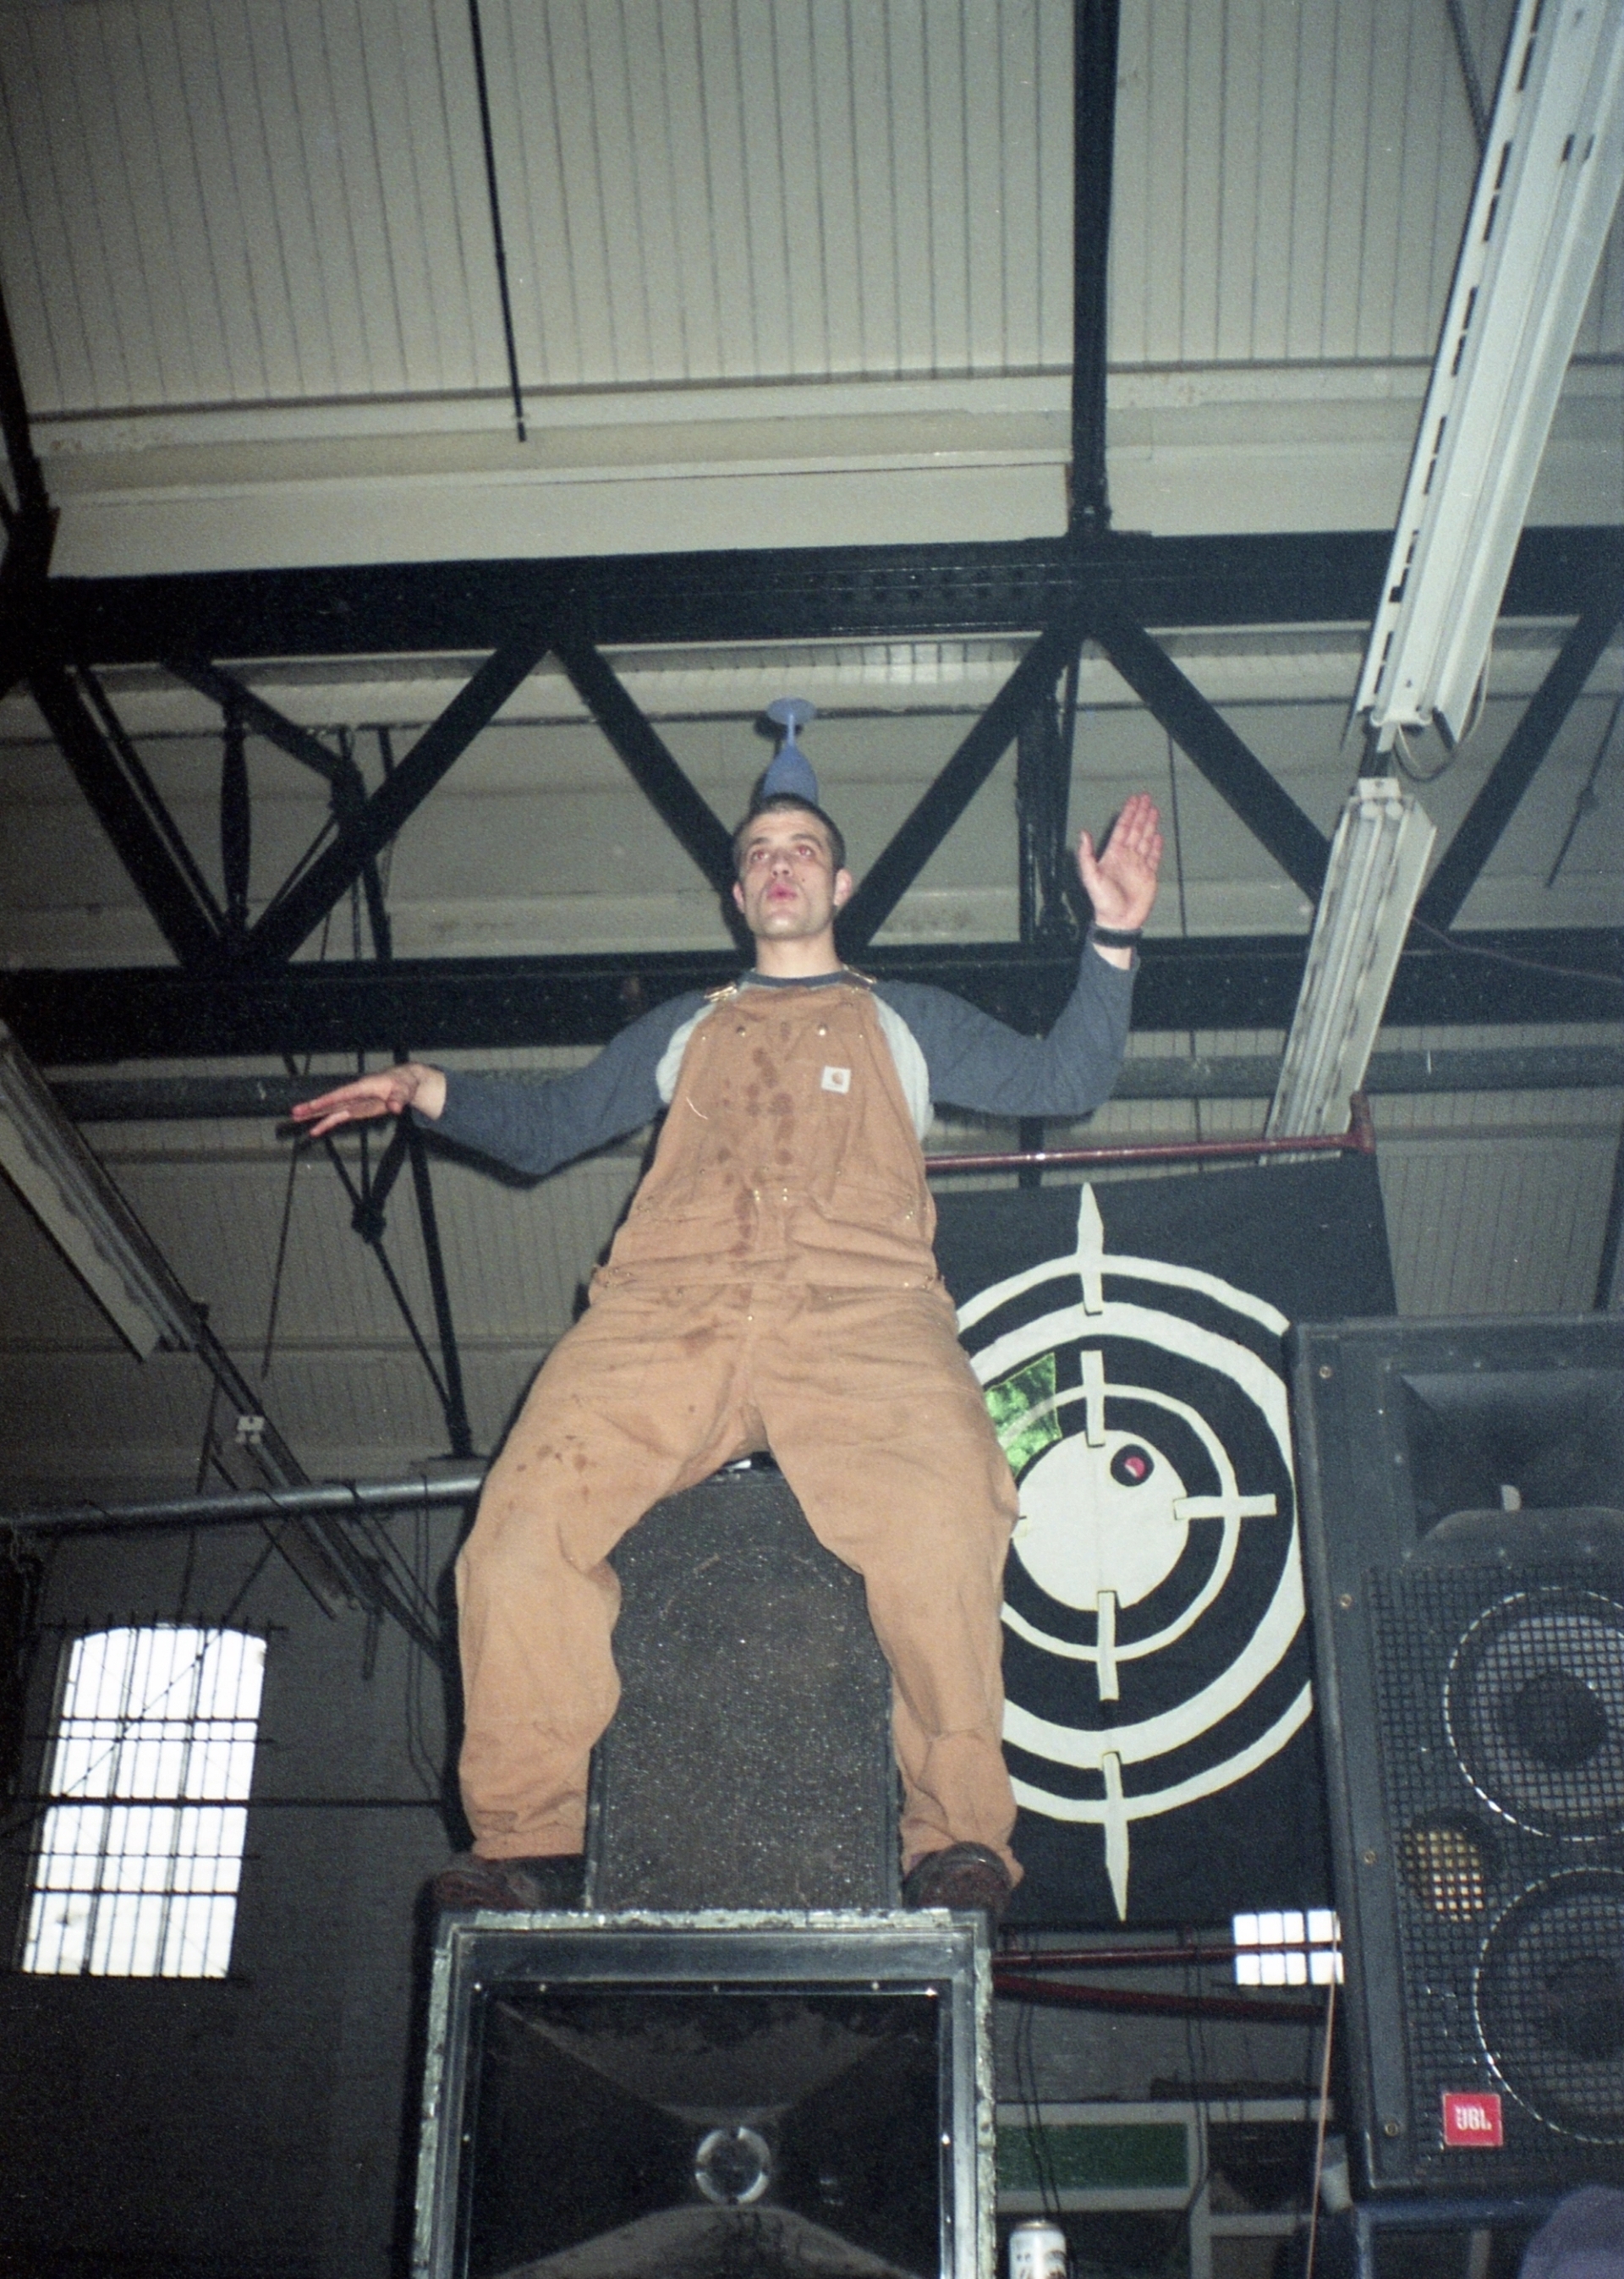 Raver on a speaker, London 1999. Courtesy Seana Gavin.